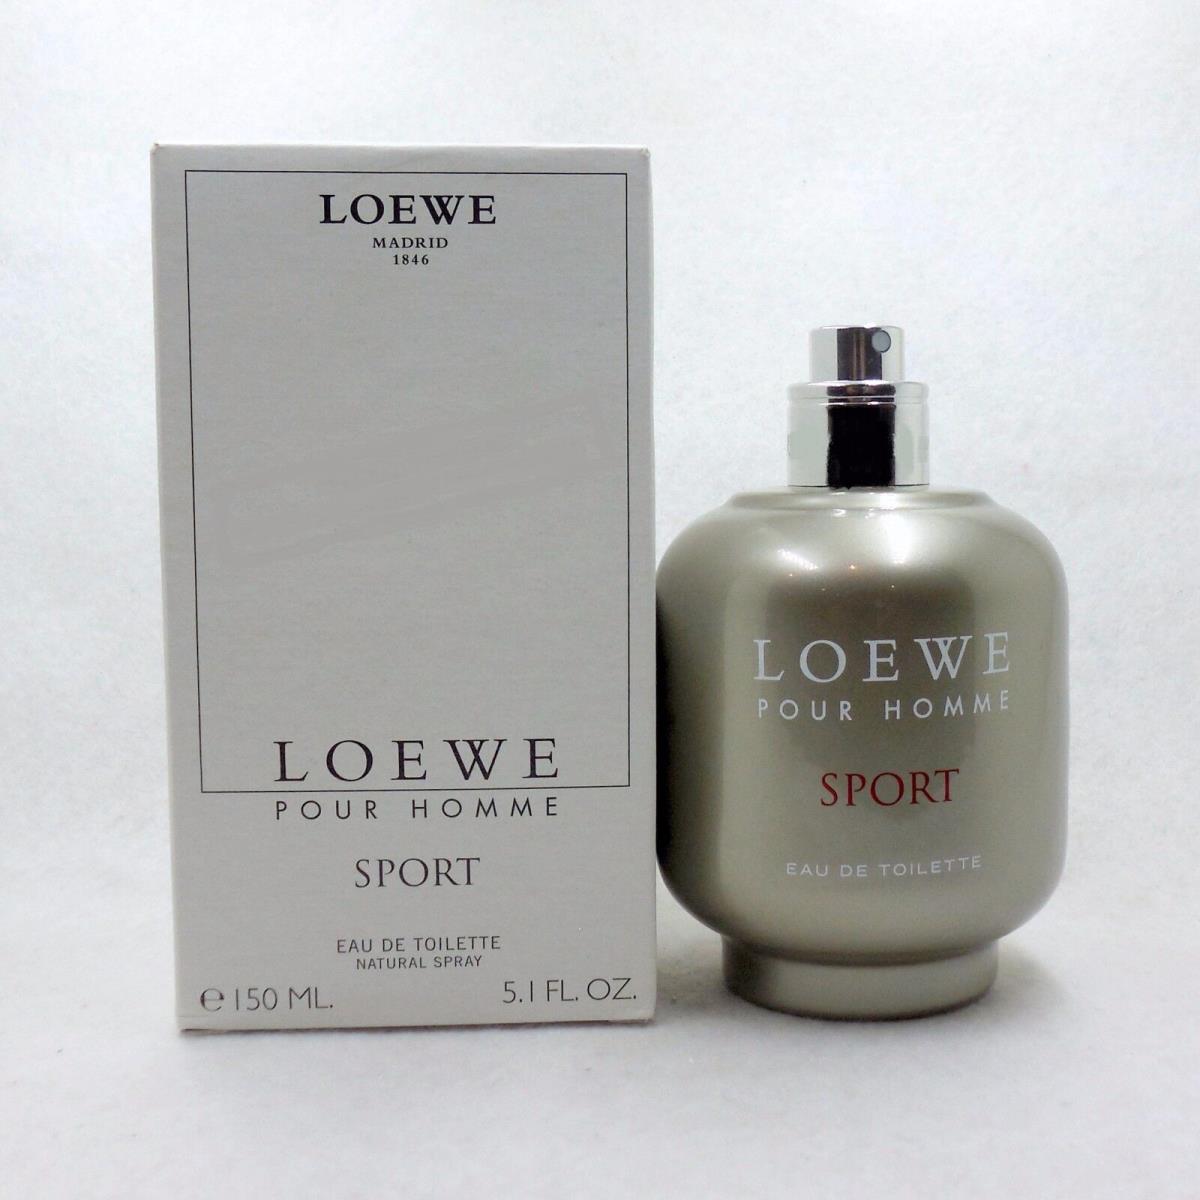 Loewe Pour Homme Sport Eau DE Toilette Natural Spray 150 ML / 5.1 FL OZ T